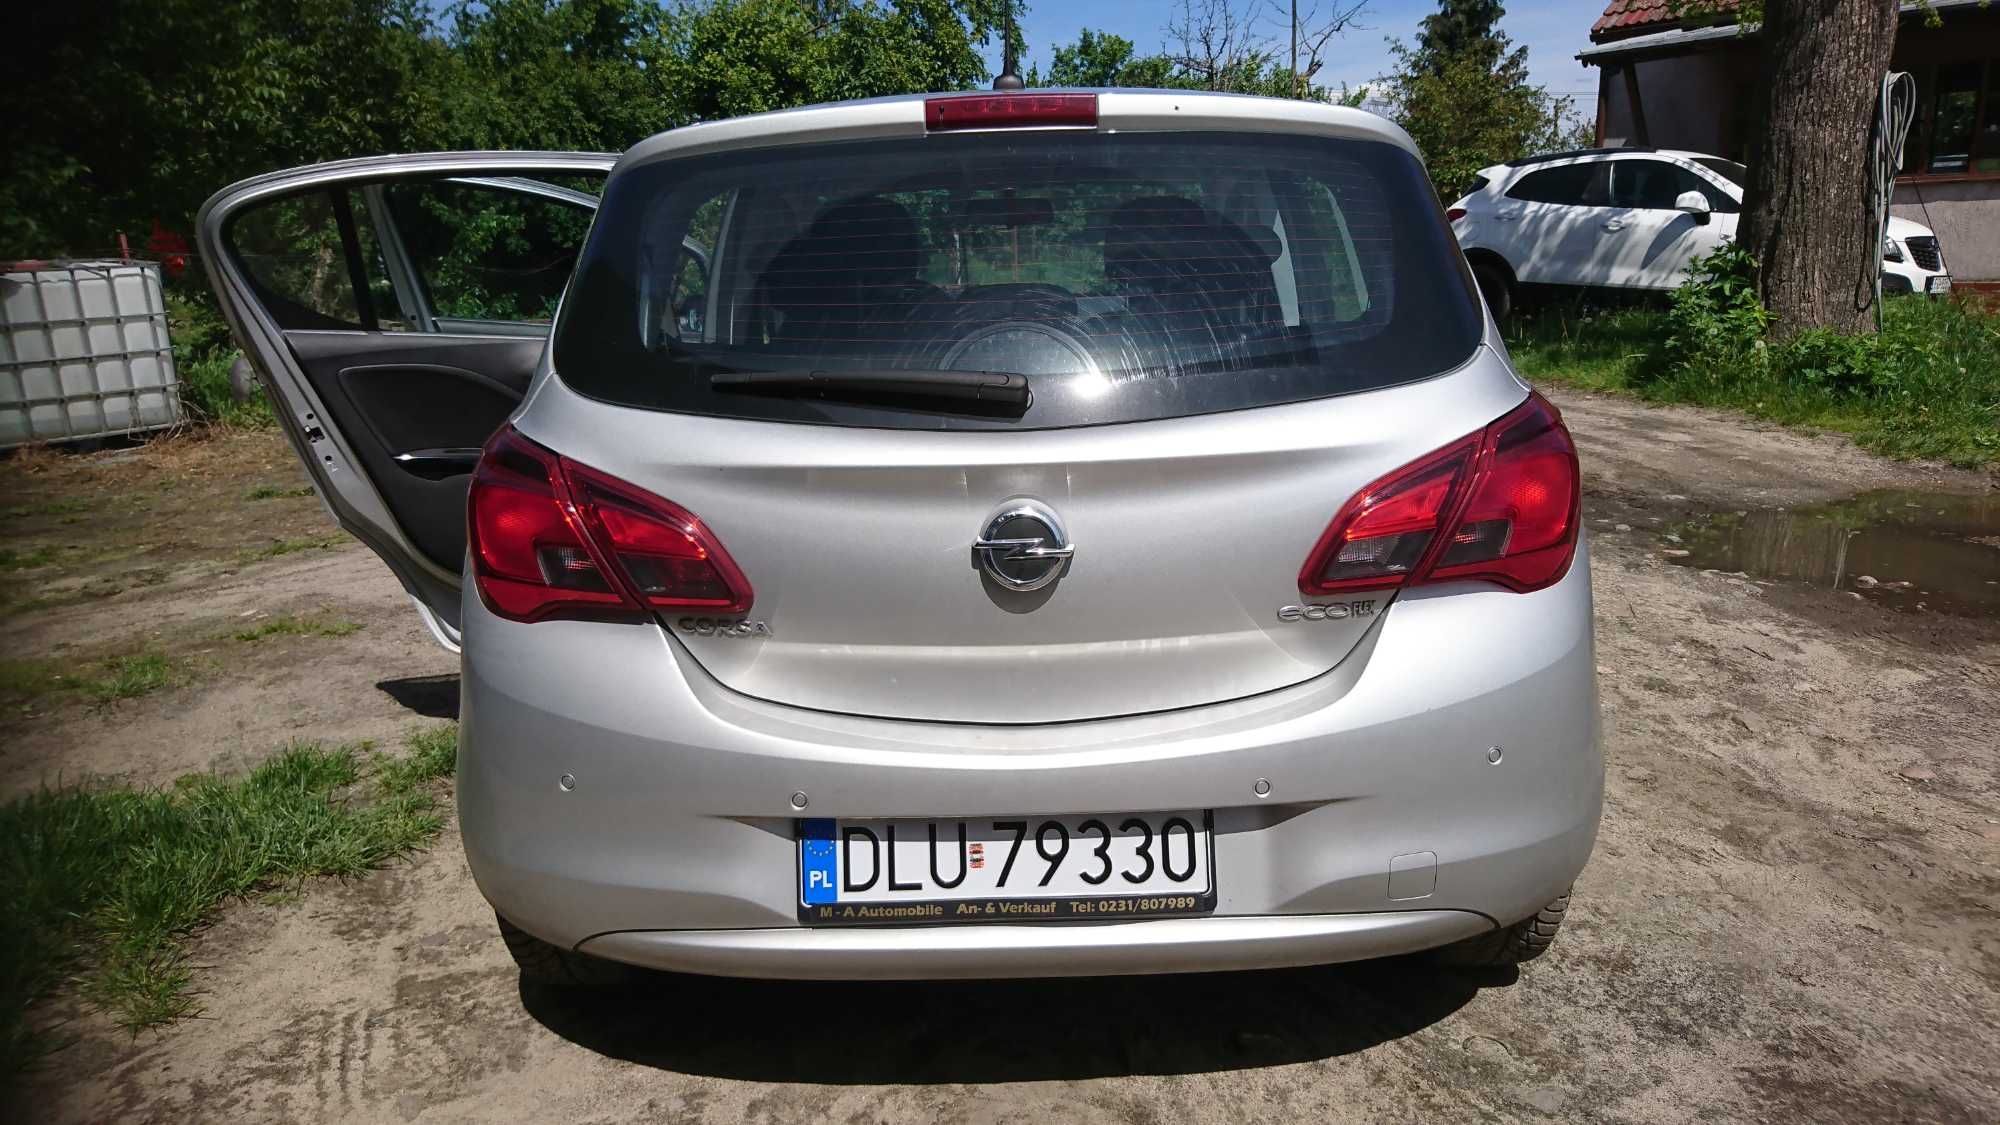 Opel Corsa 1.3 Cdti 95km Nawigacja